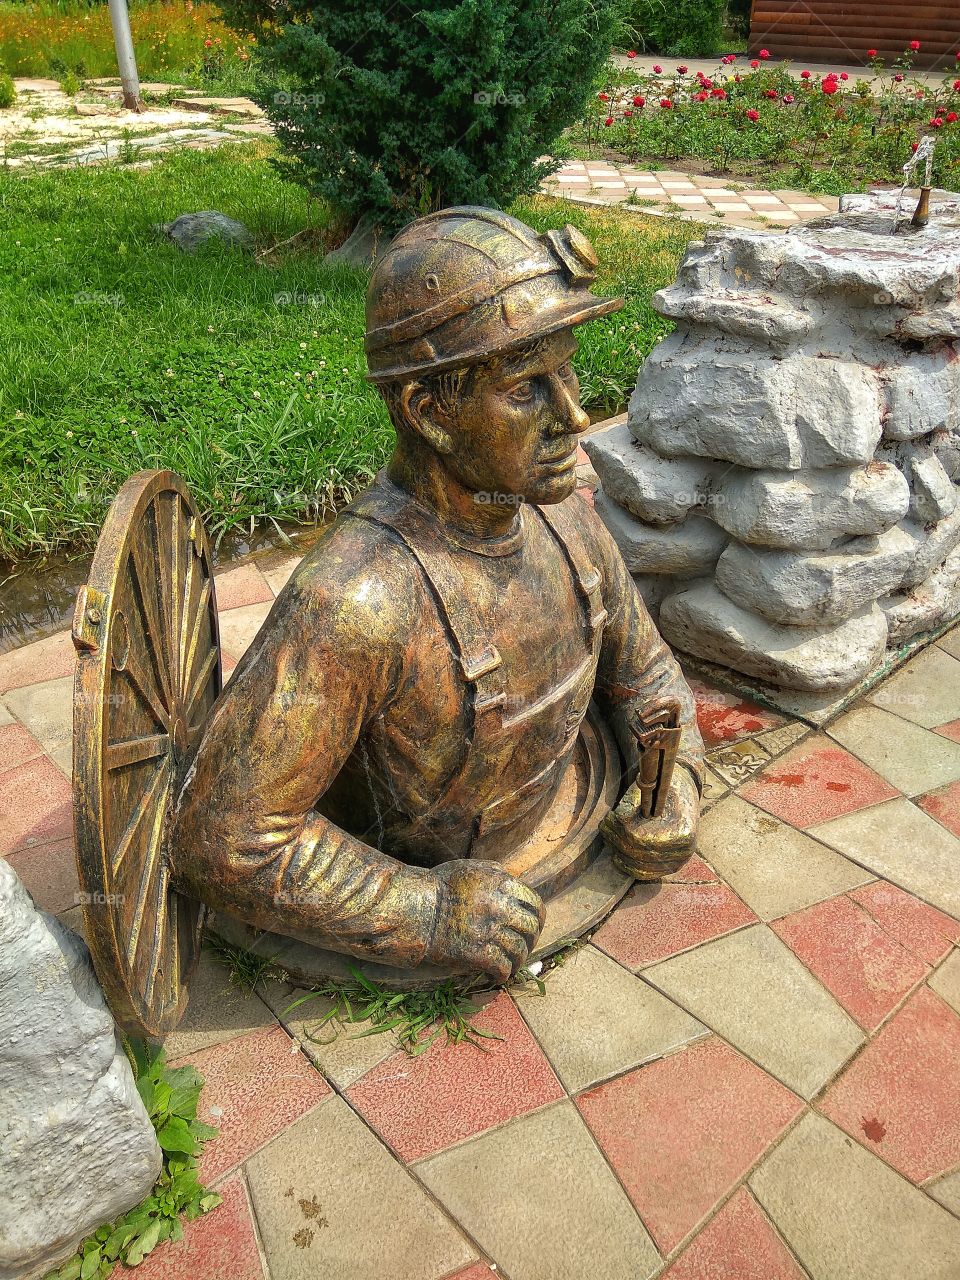 Sculpture of a plumber